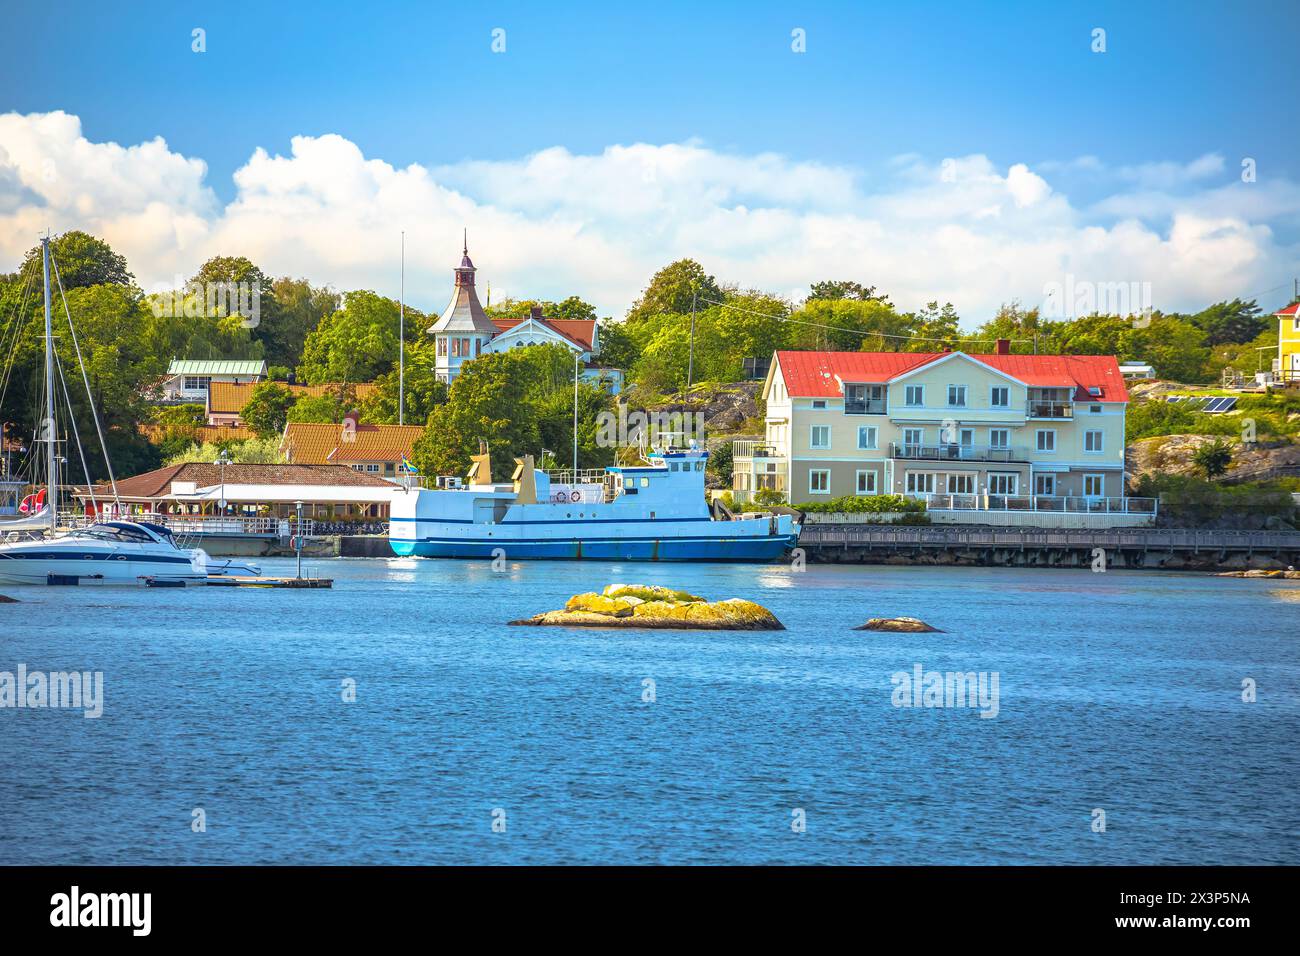 Villaggio BRATTEN sull'isola Styrso nell'arcipelago di Gothenburg, vista panoramica sul lungomare, municipalità di Goteborg, contea di Vastra Gotaland, Svezia Foto Stock